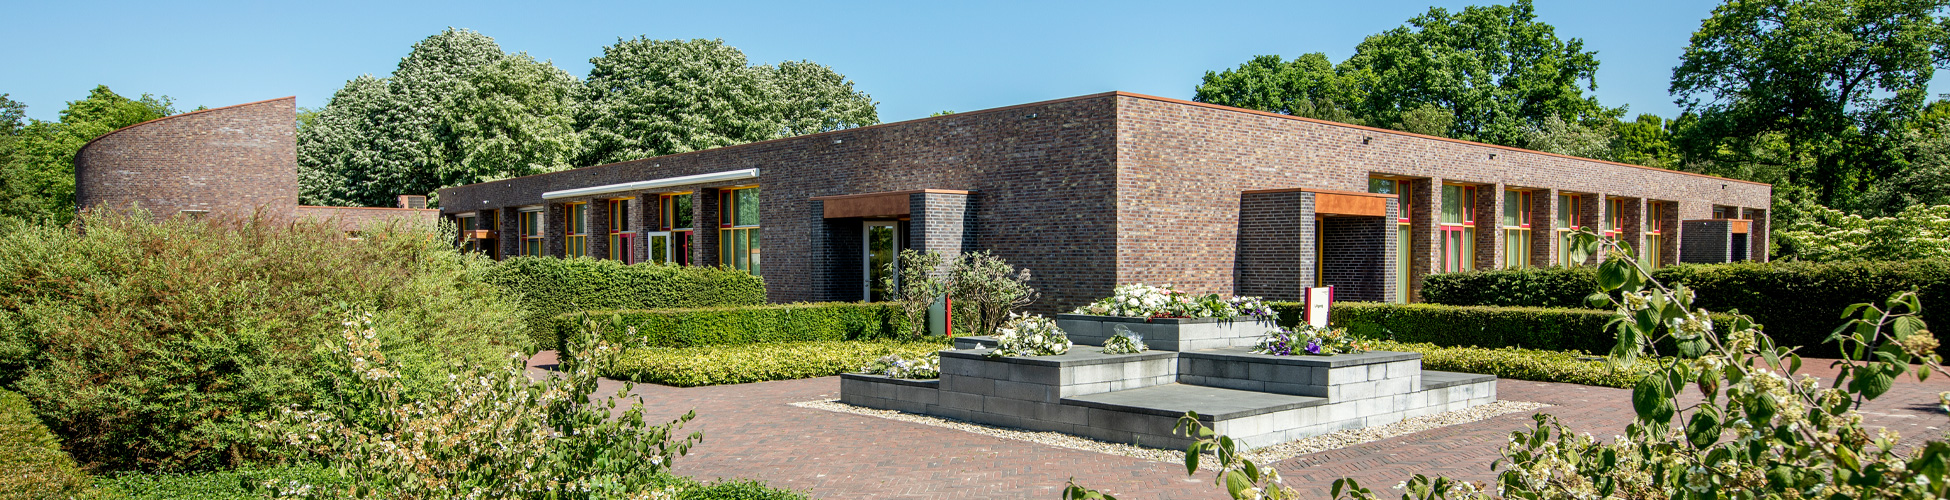 Het Crematorium en Uitvaartcentrum Reestborgh in Meppel heeft eigentijdse voorzieningen en een warme uitstraling.